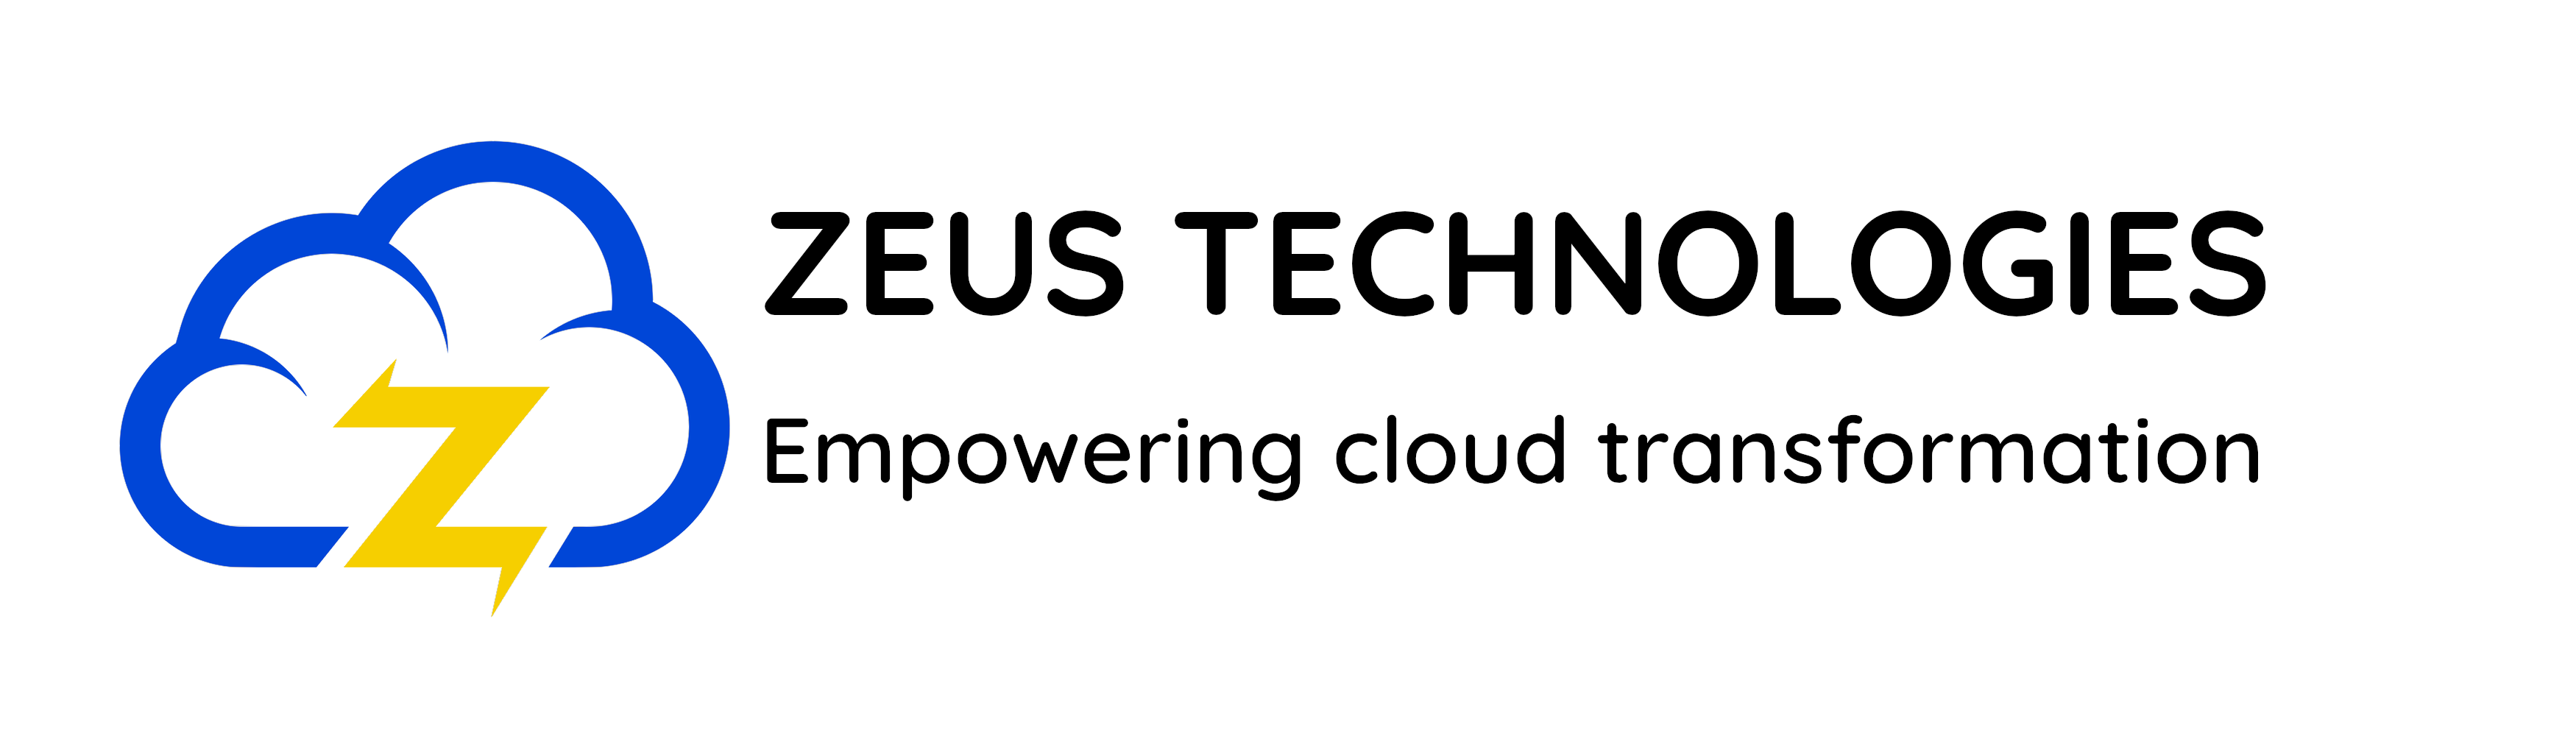 Zeus Technologies